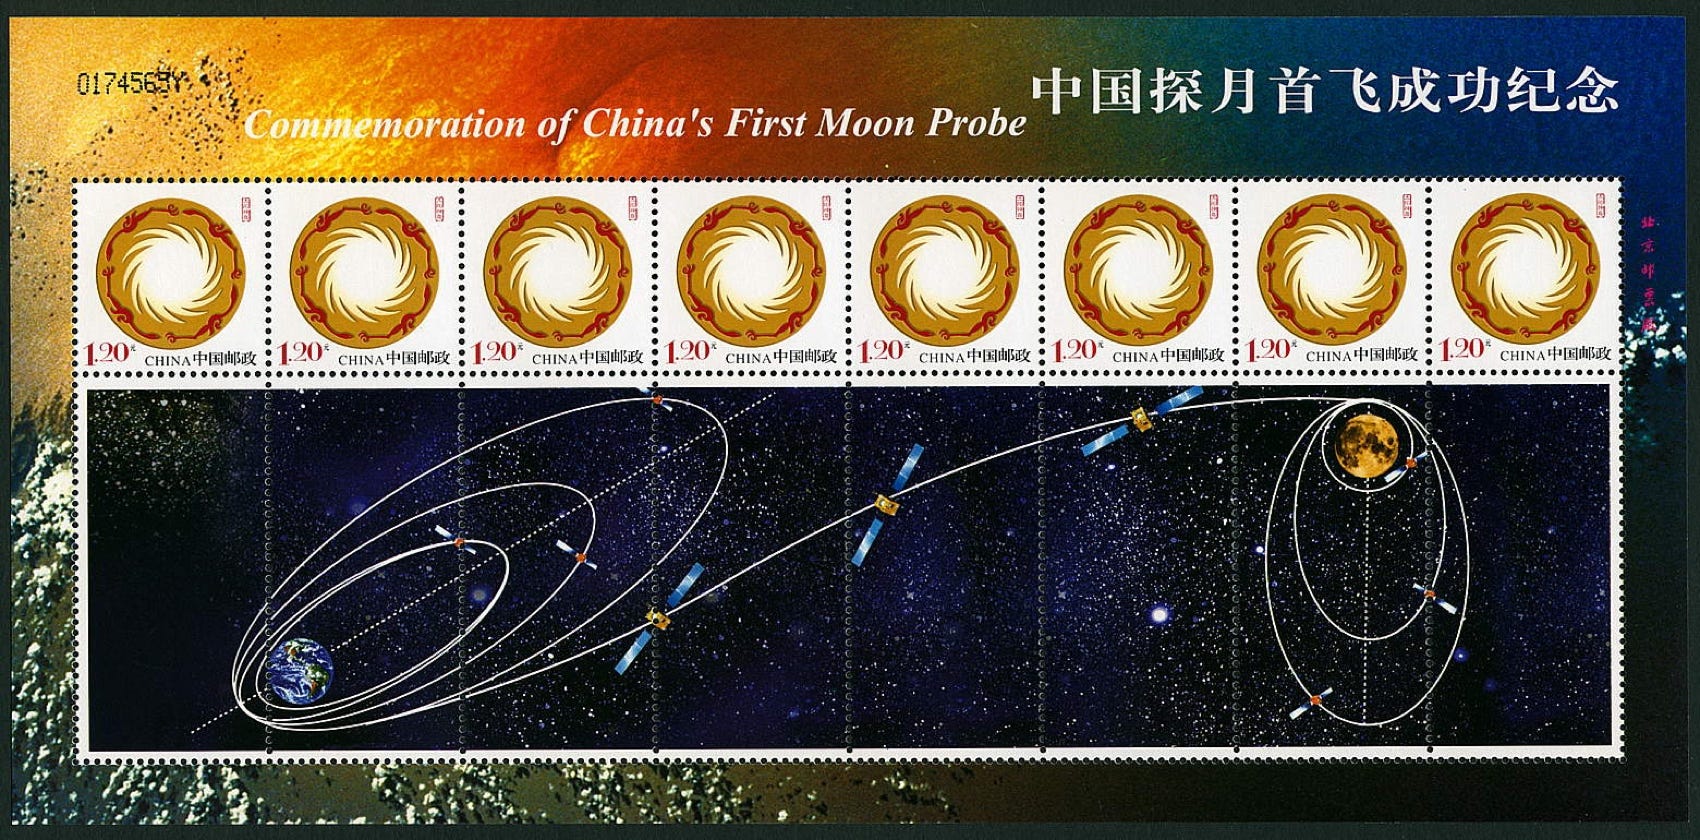 China 2007 stamp sheet Chang'e 1